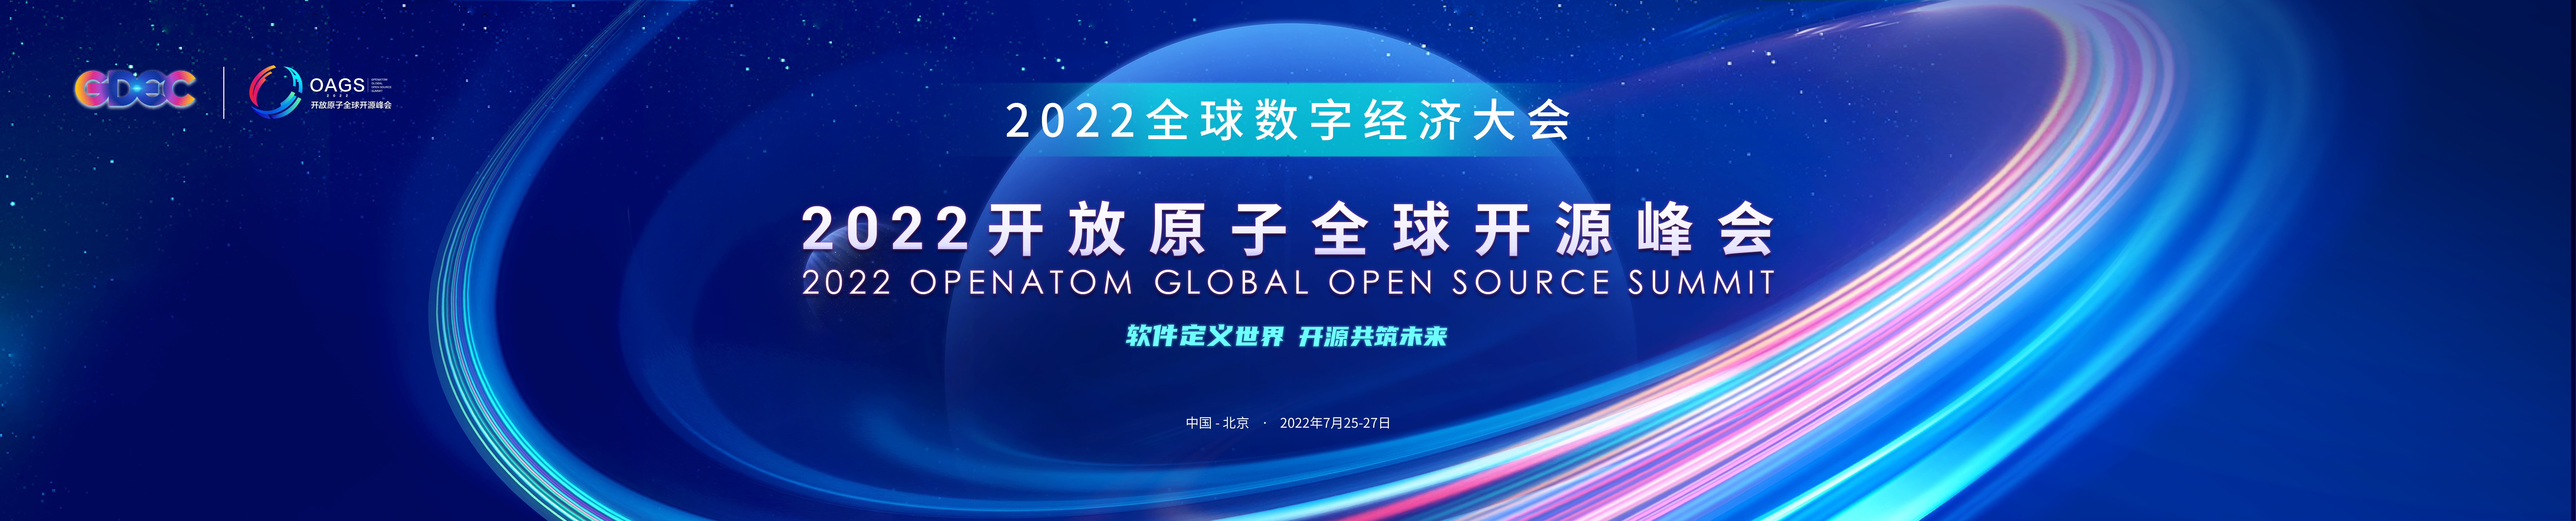 2022 开放原子全球开源峰会开源工业软件论坛即将开幕-开源基础软件社区